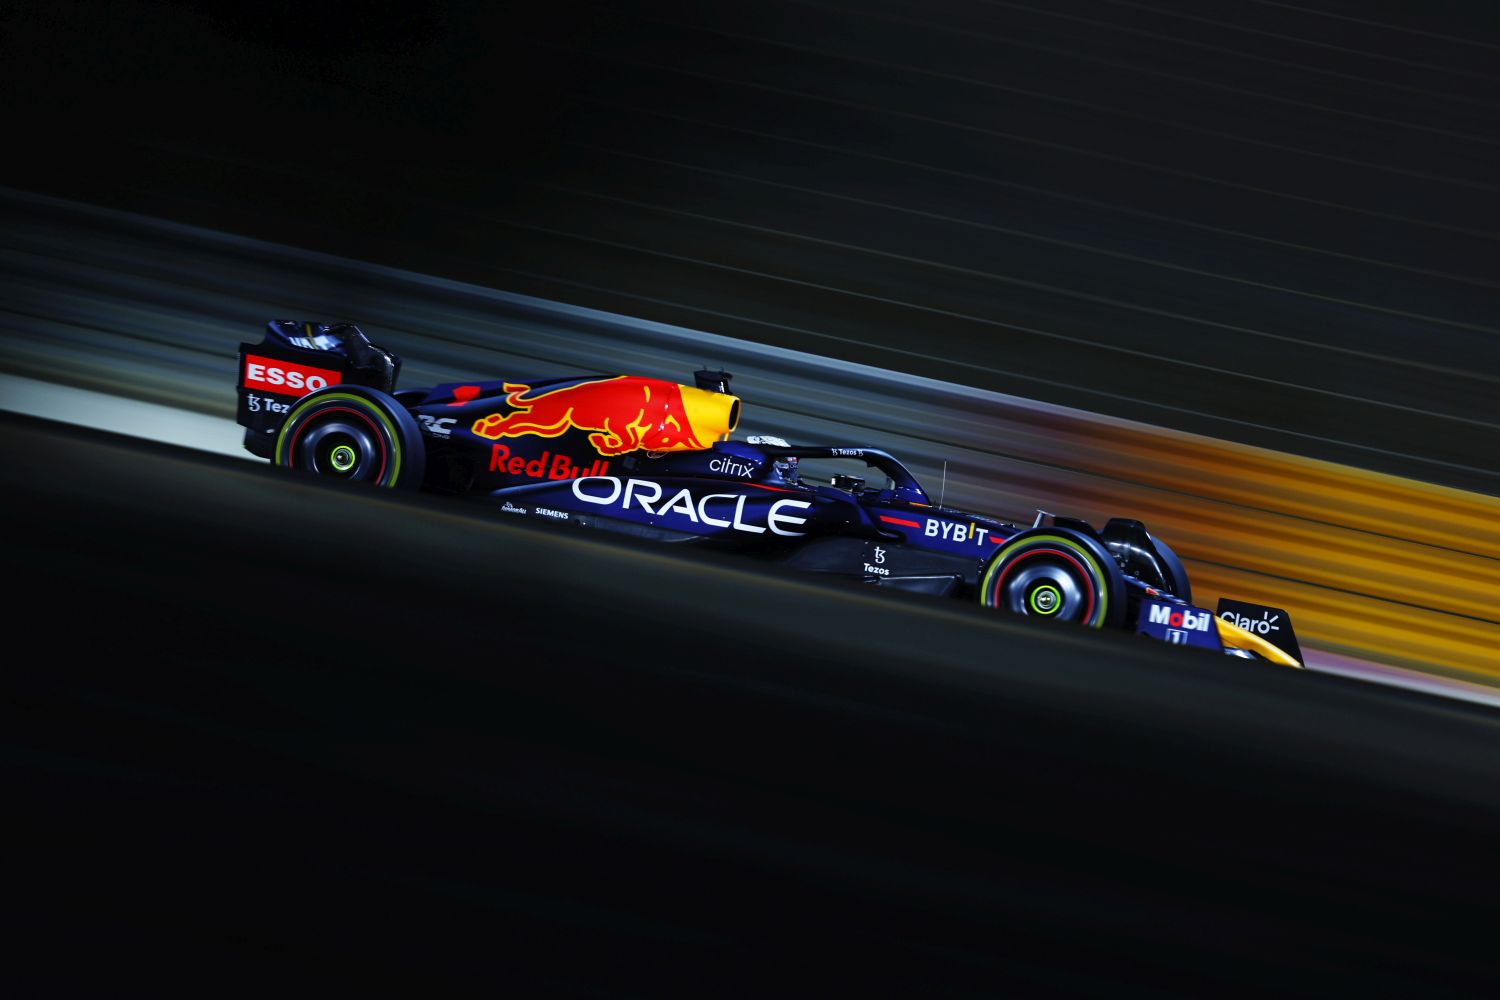 GP do Bahrein: Alonso lidera segundo treino livre com melhor tempo do dia